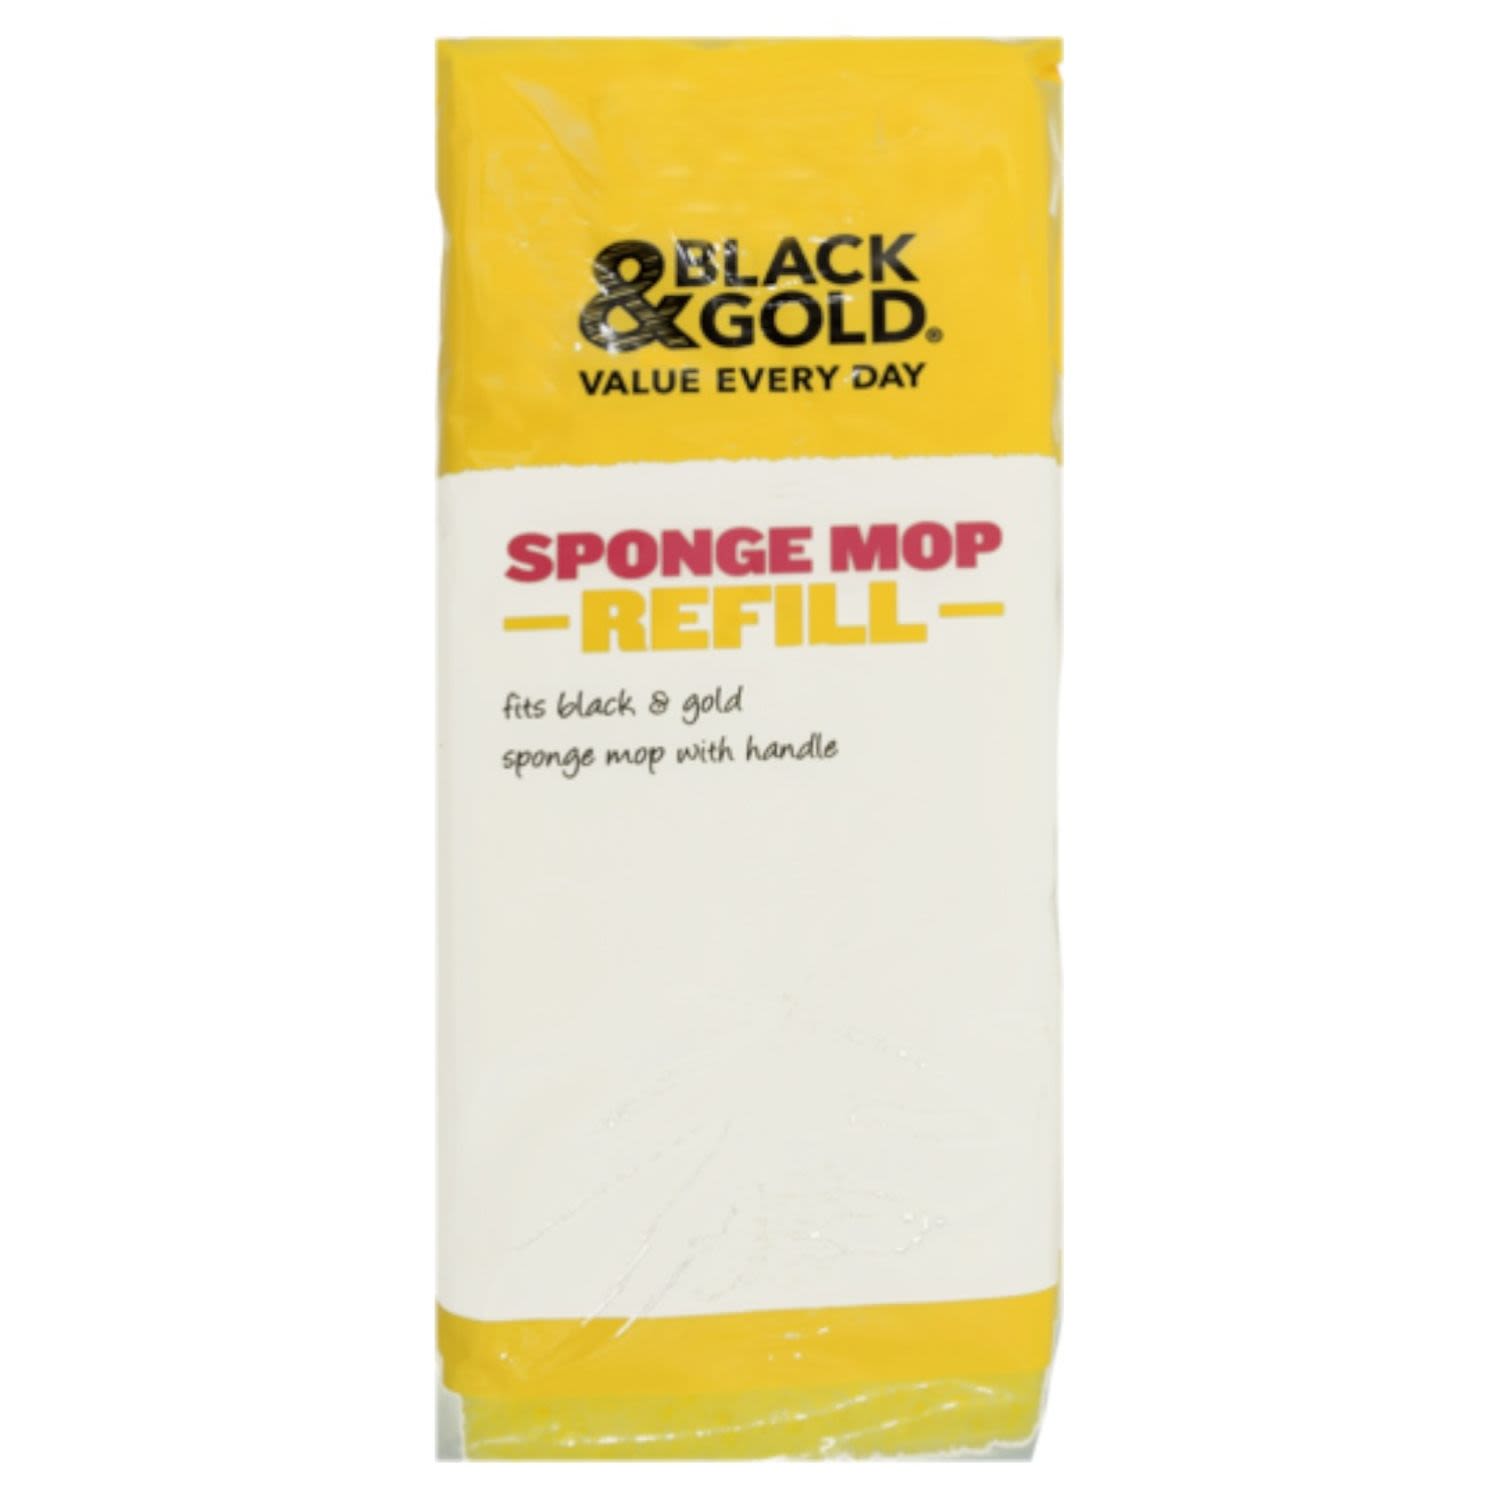 Black & Gold Sponge Mop Refill, 1 Each